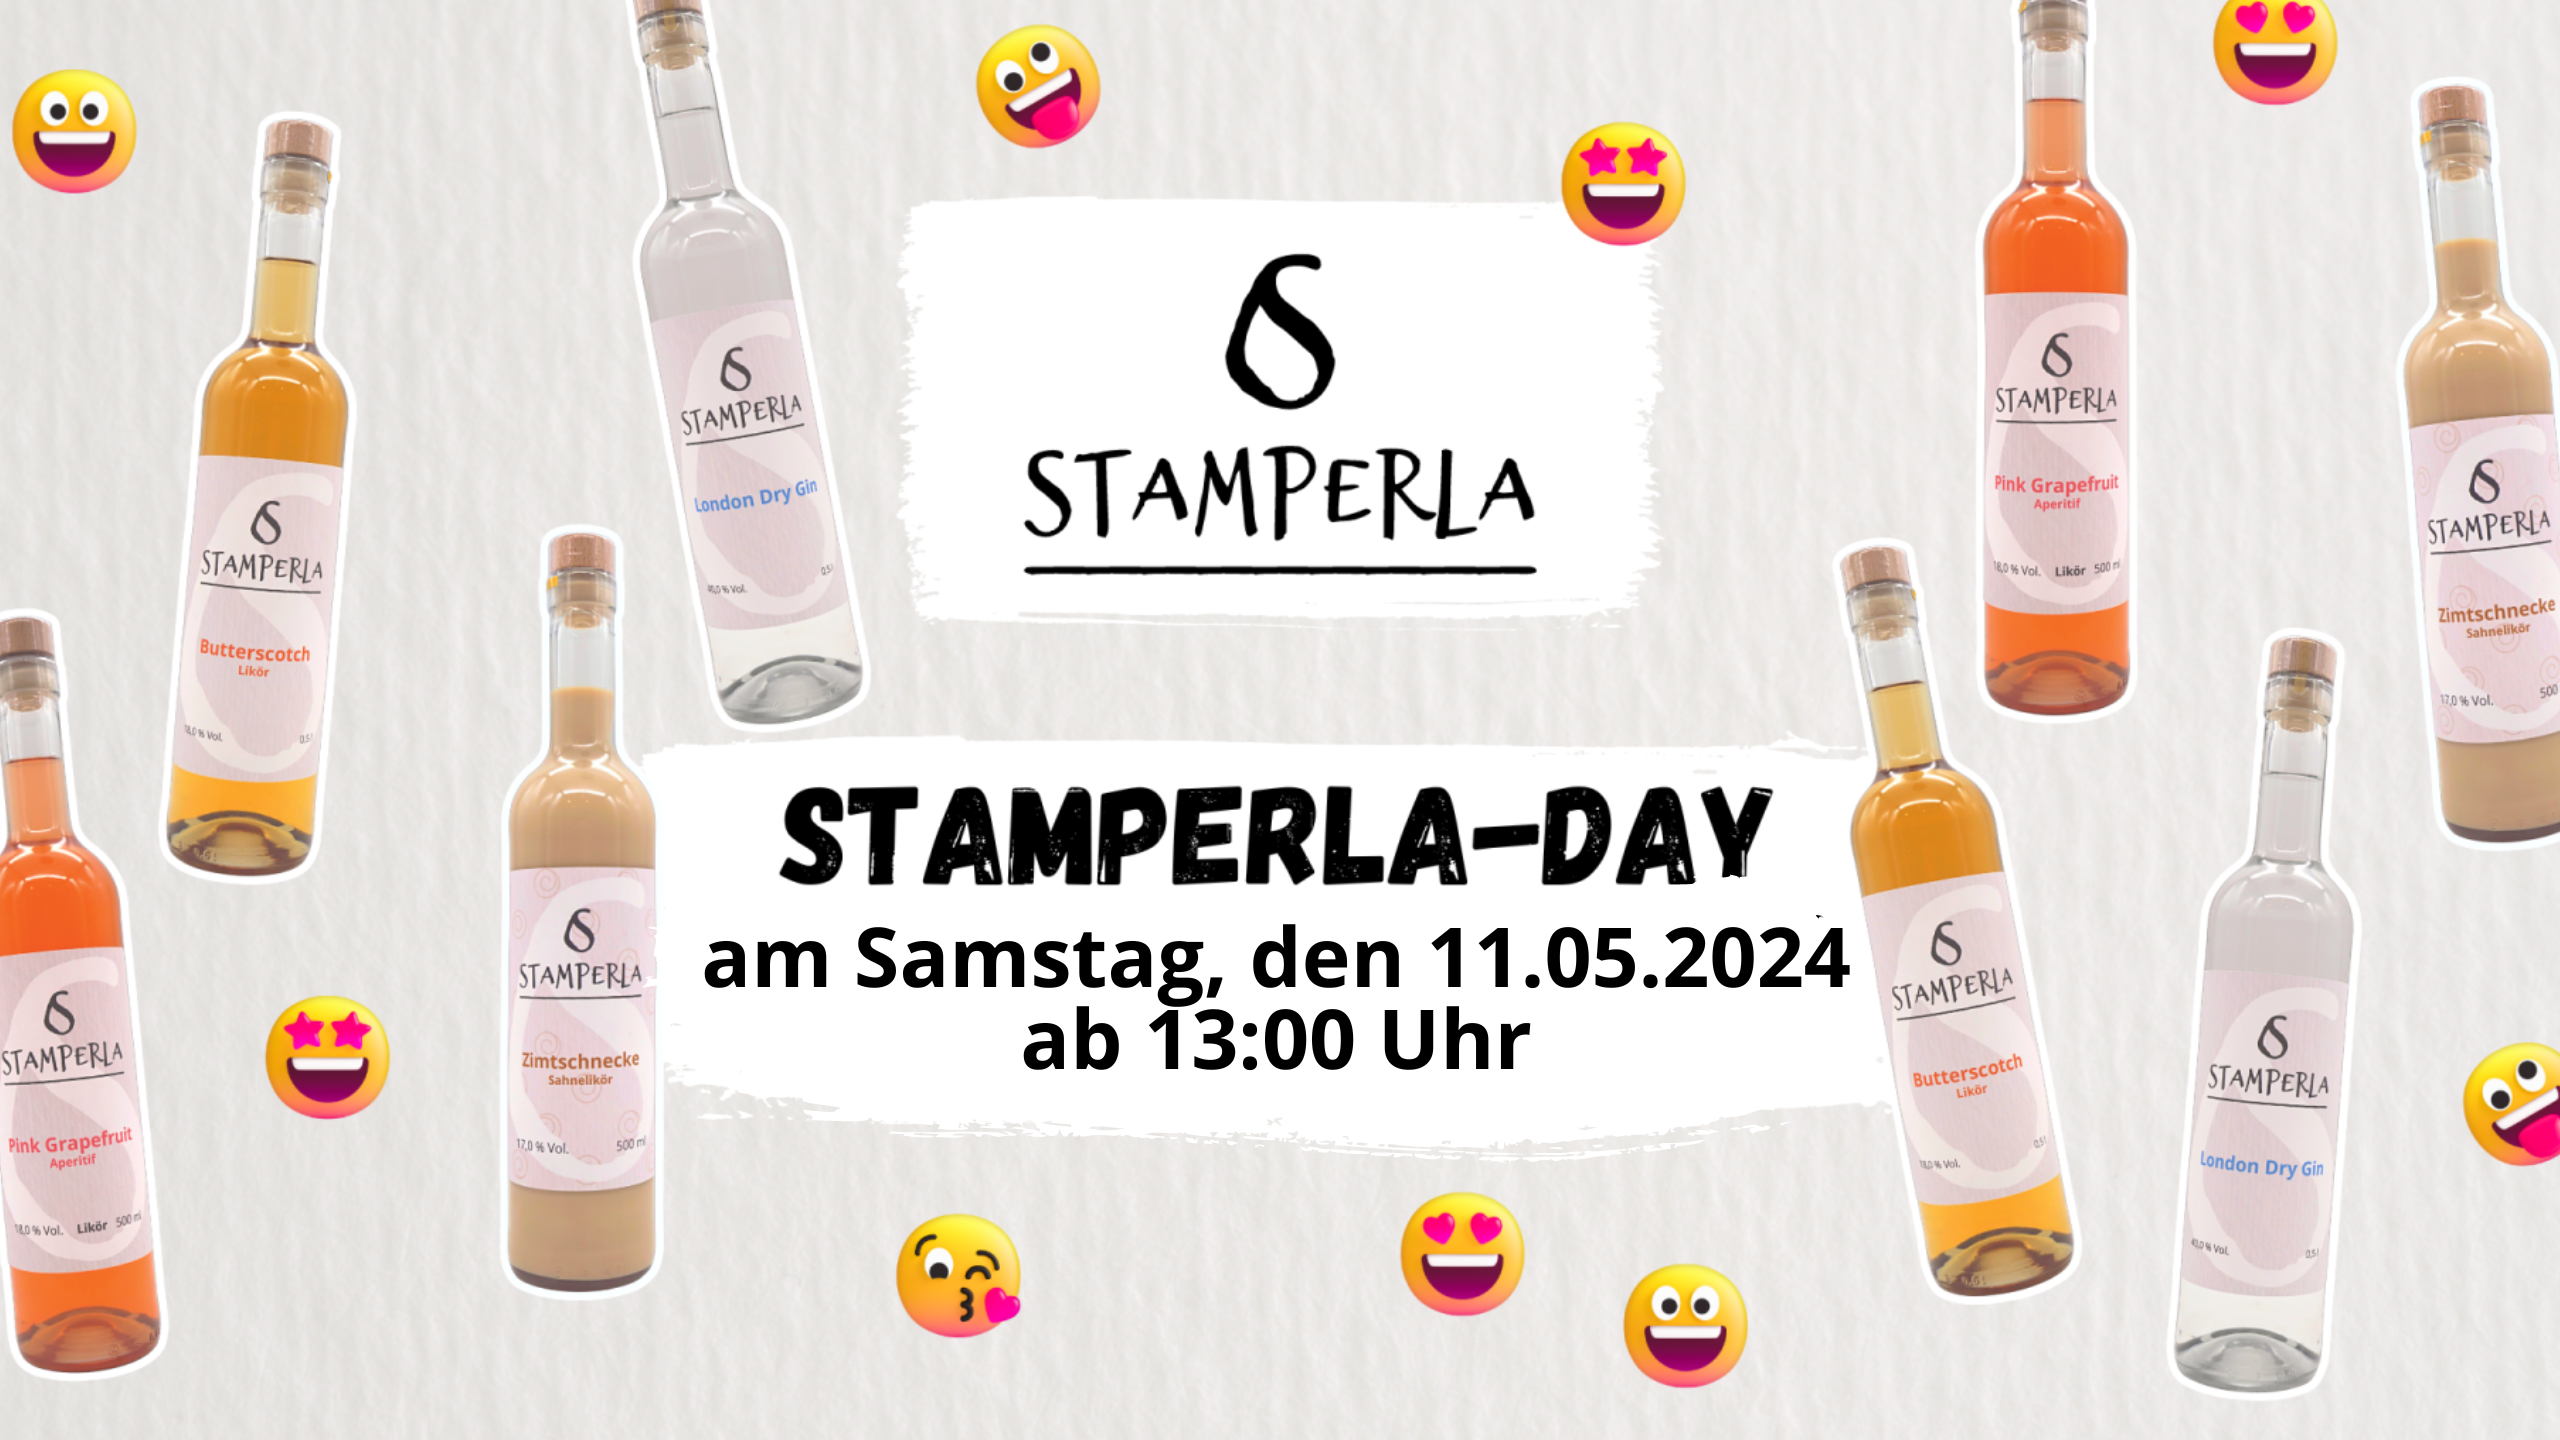 Stamperla-Day